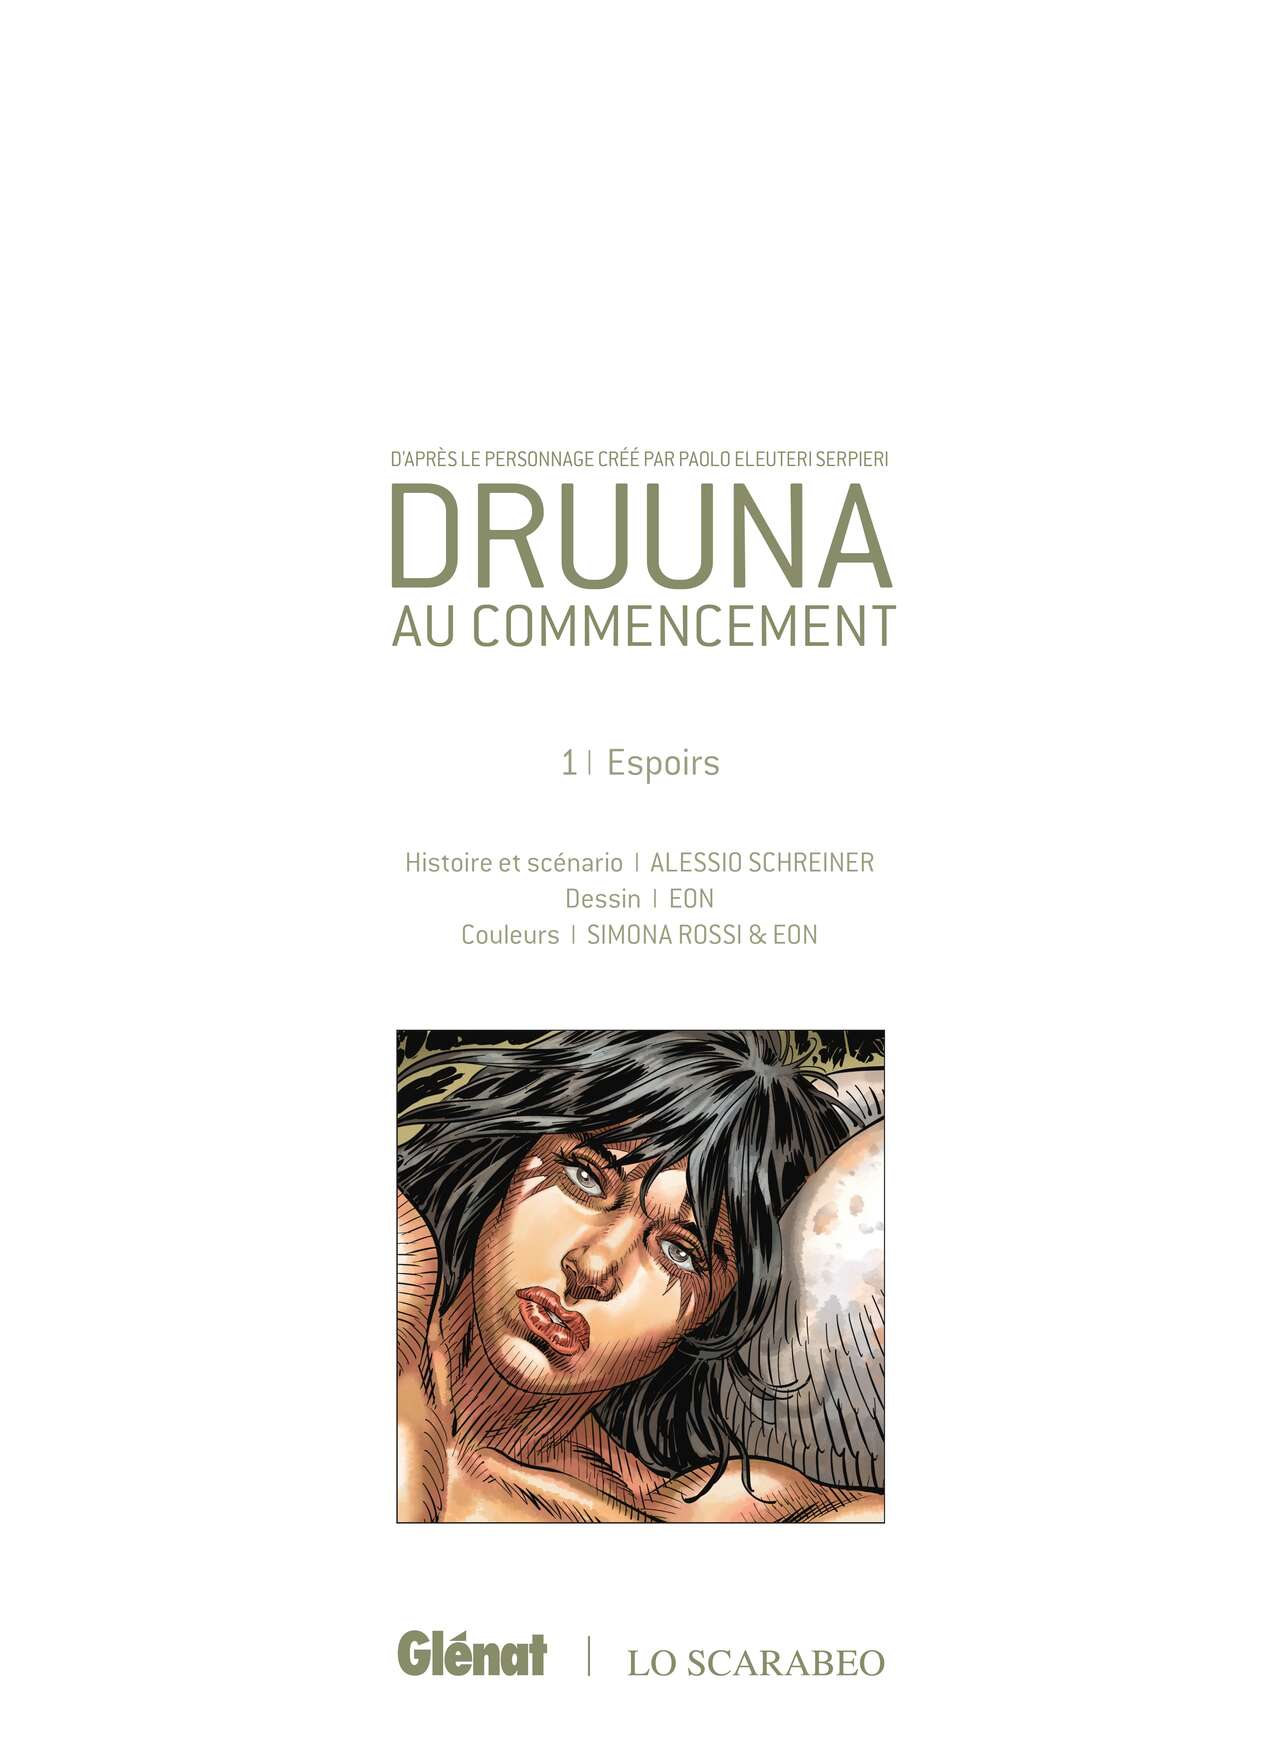 Druuna – Au commencement. Première partie – Espoirs numero d'image 3